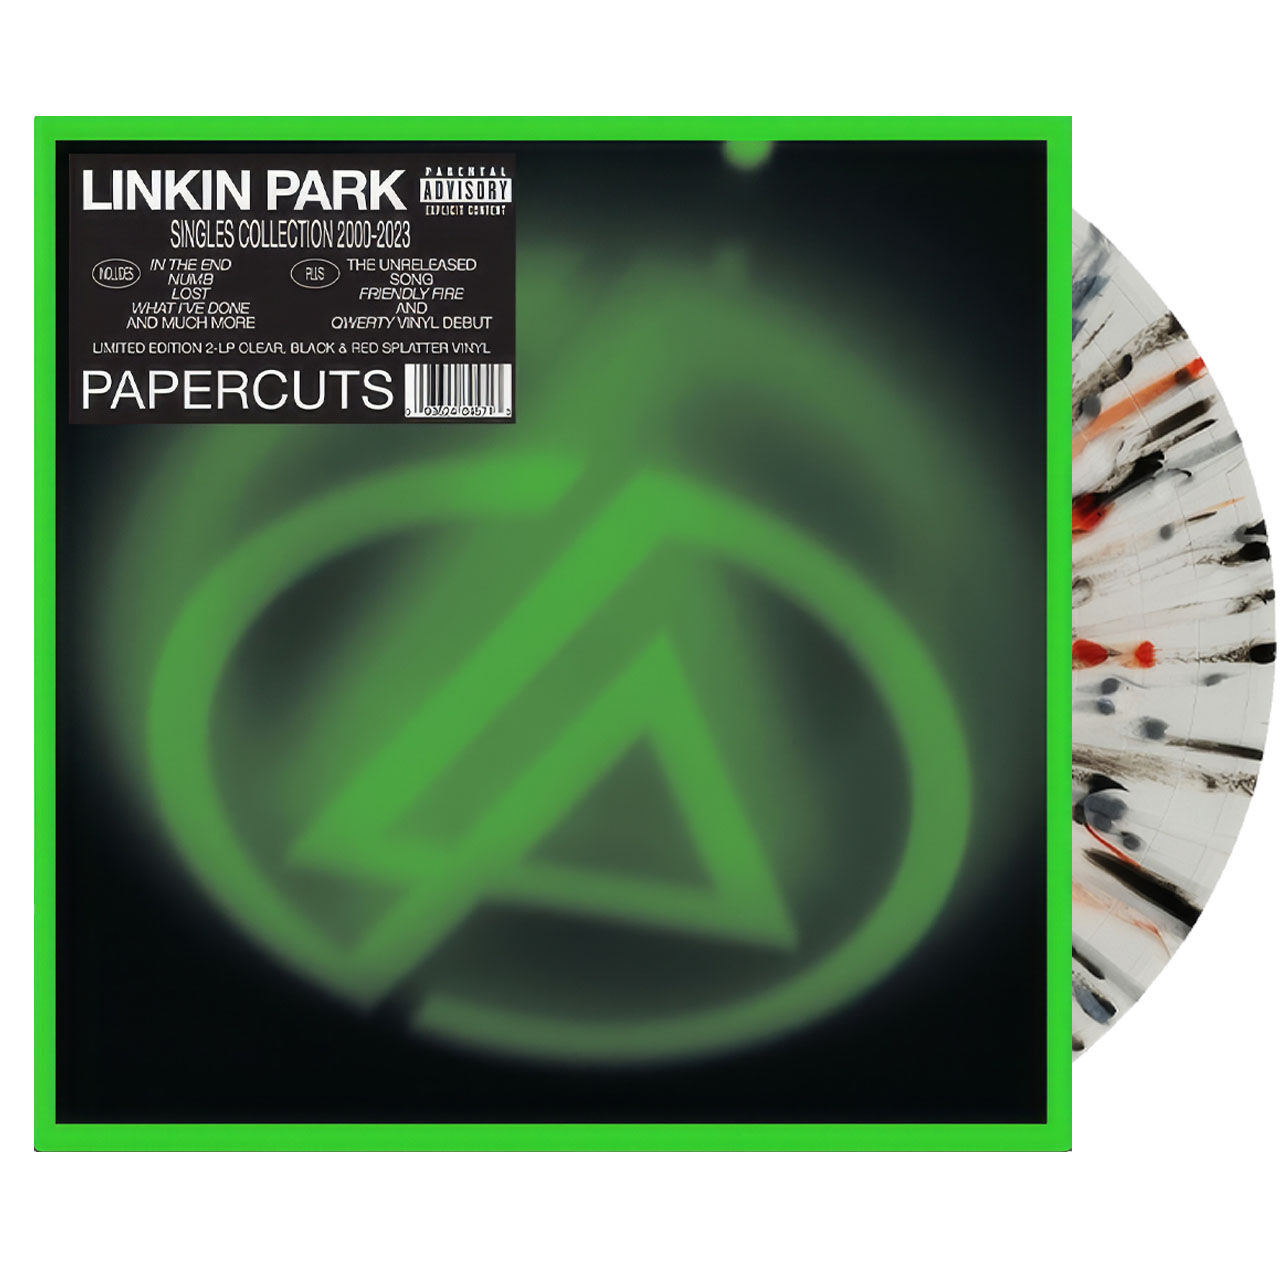 LINKIN PARK Papercuts Indie Black Red Splatter 2LP Vinyl